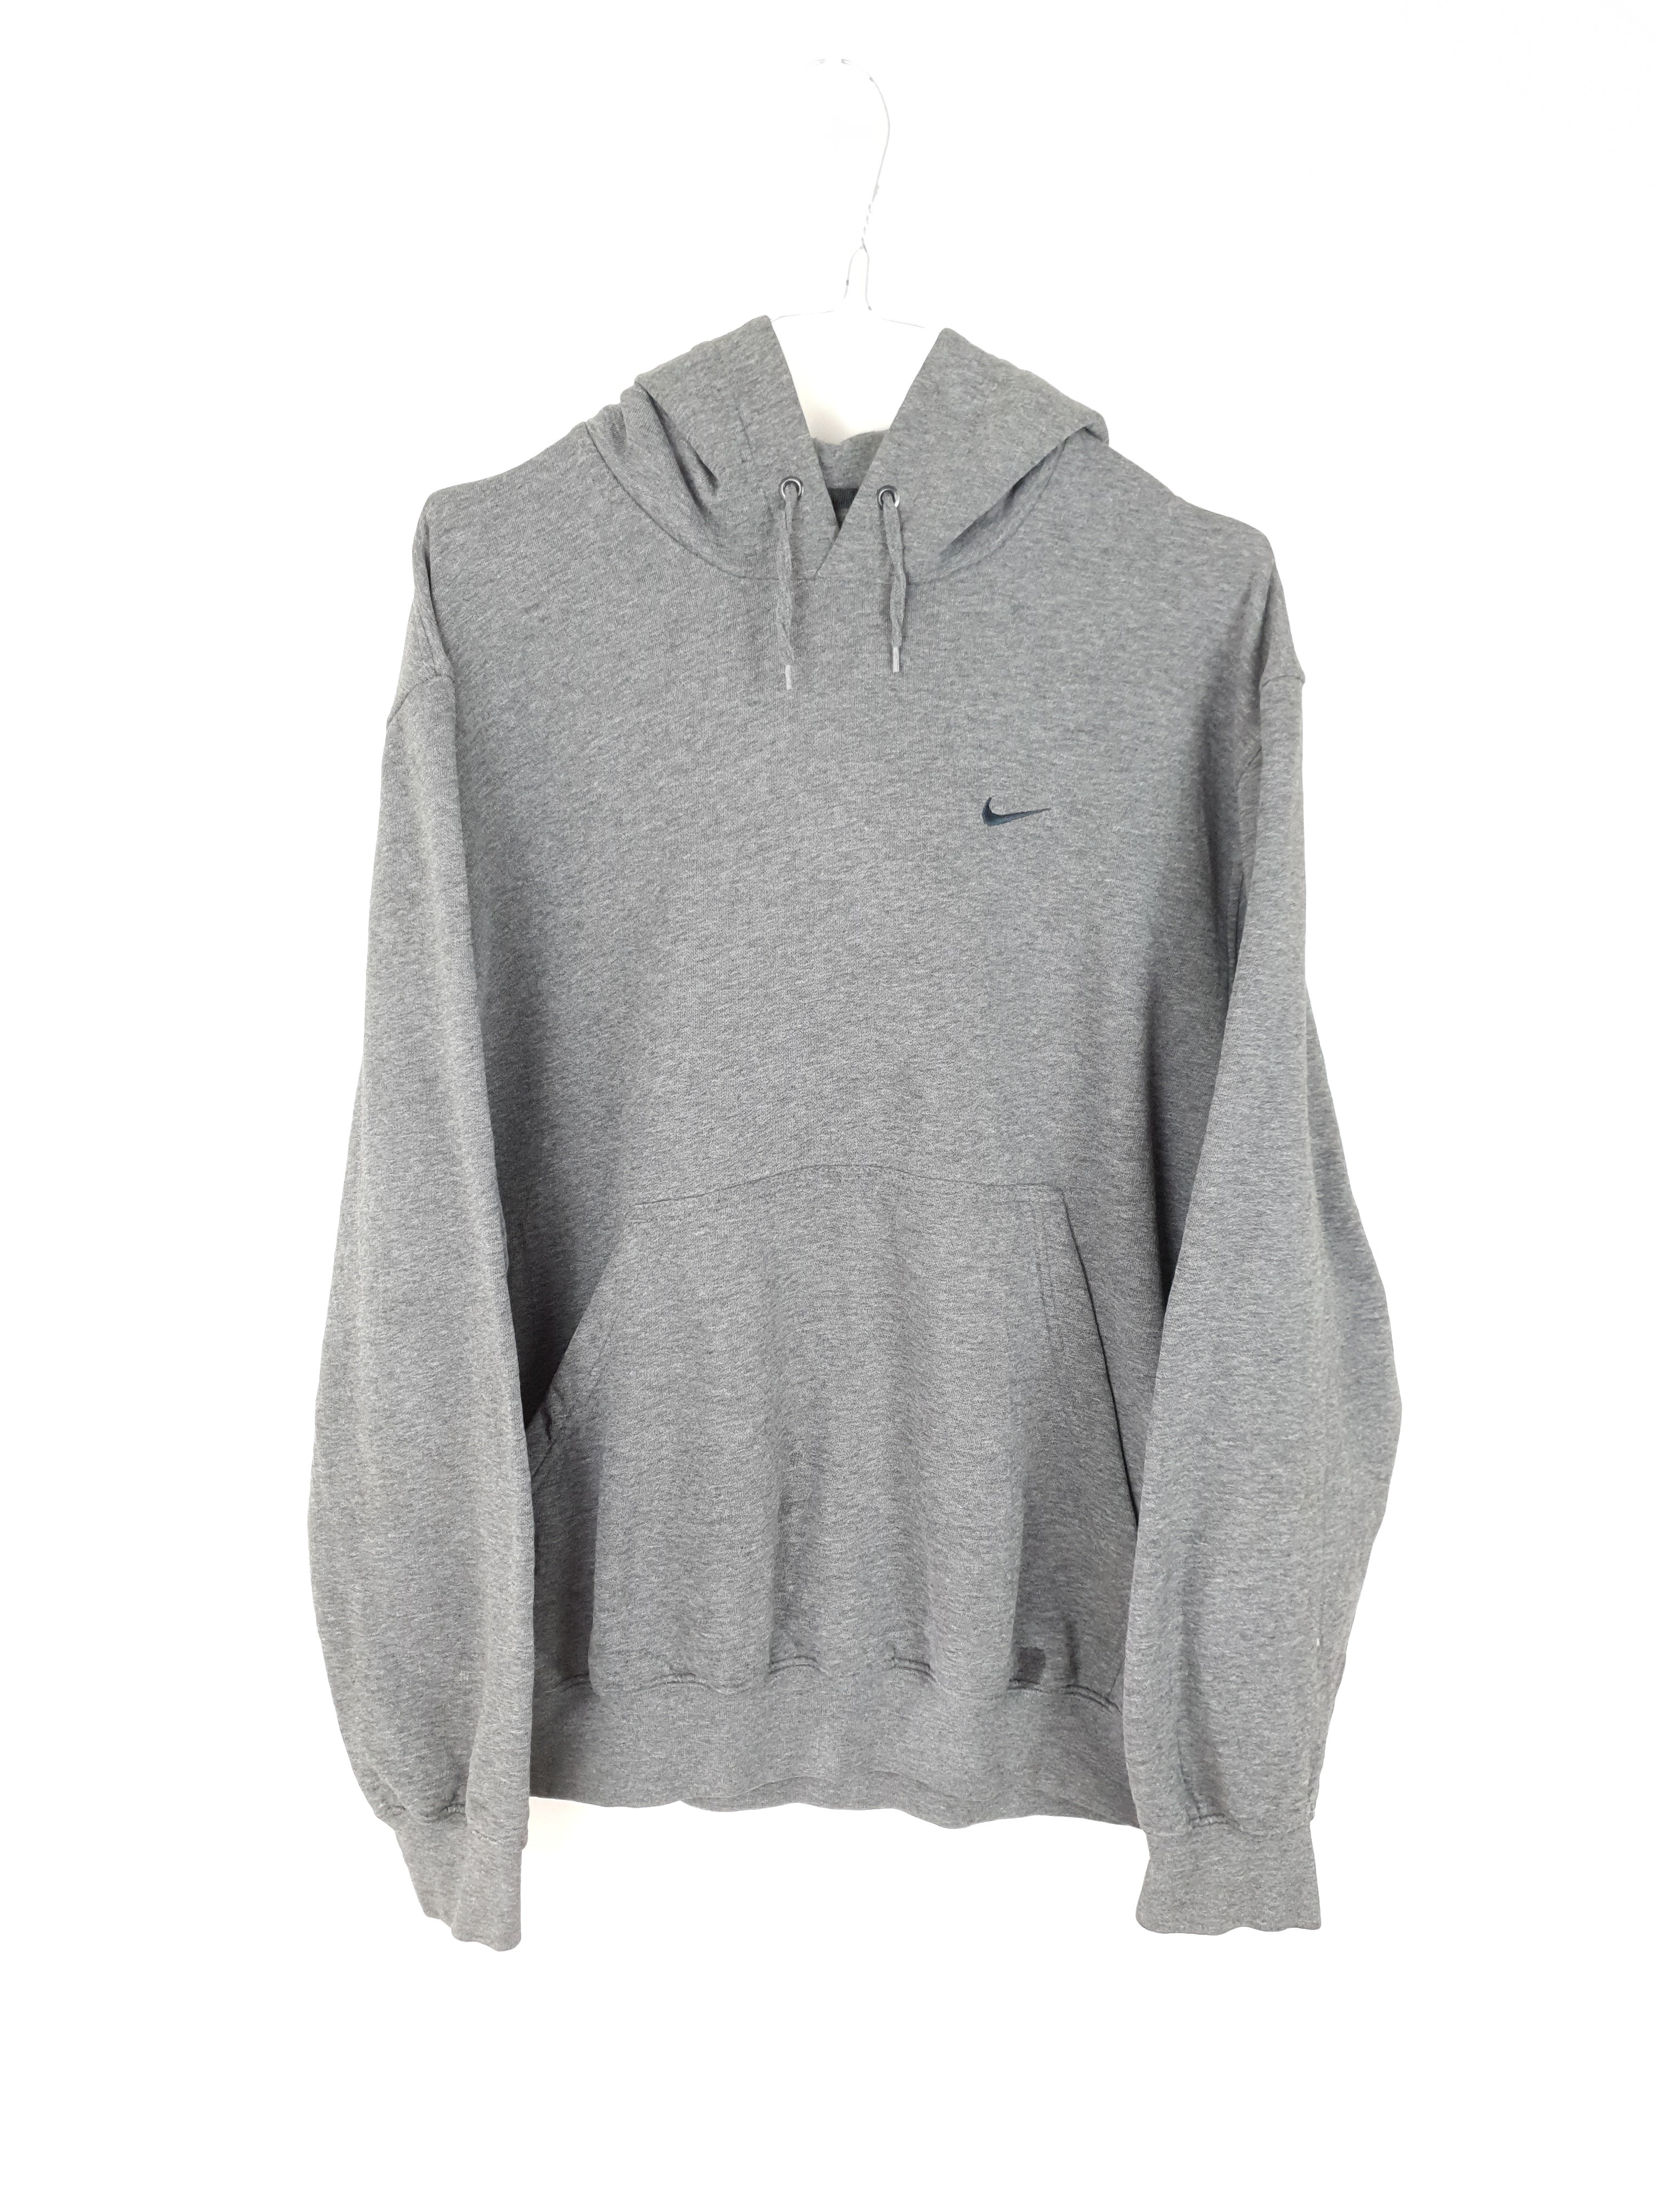 grey nike tick hoodie